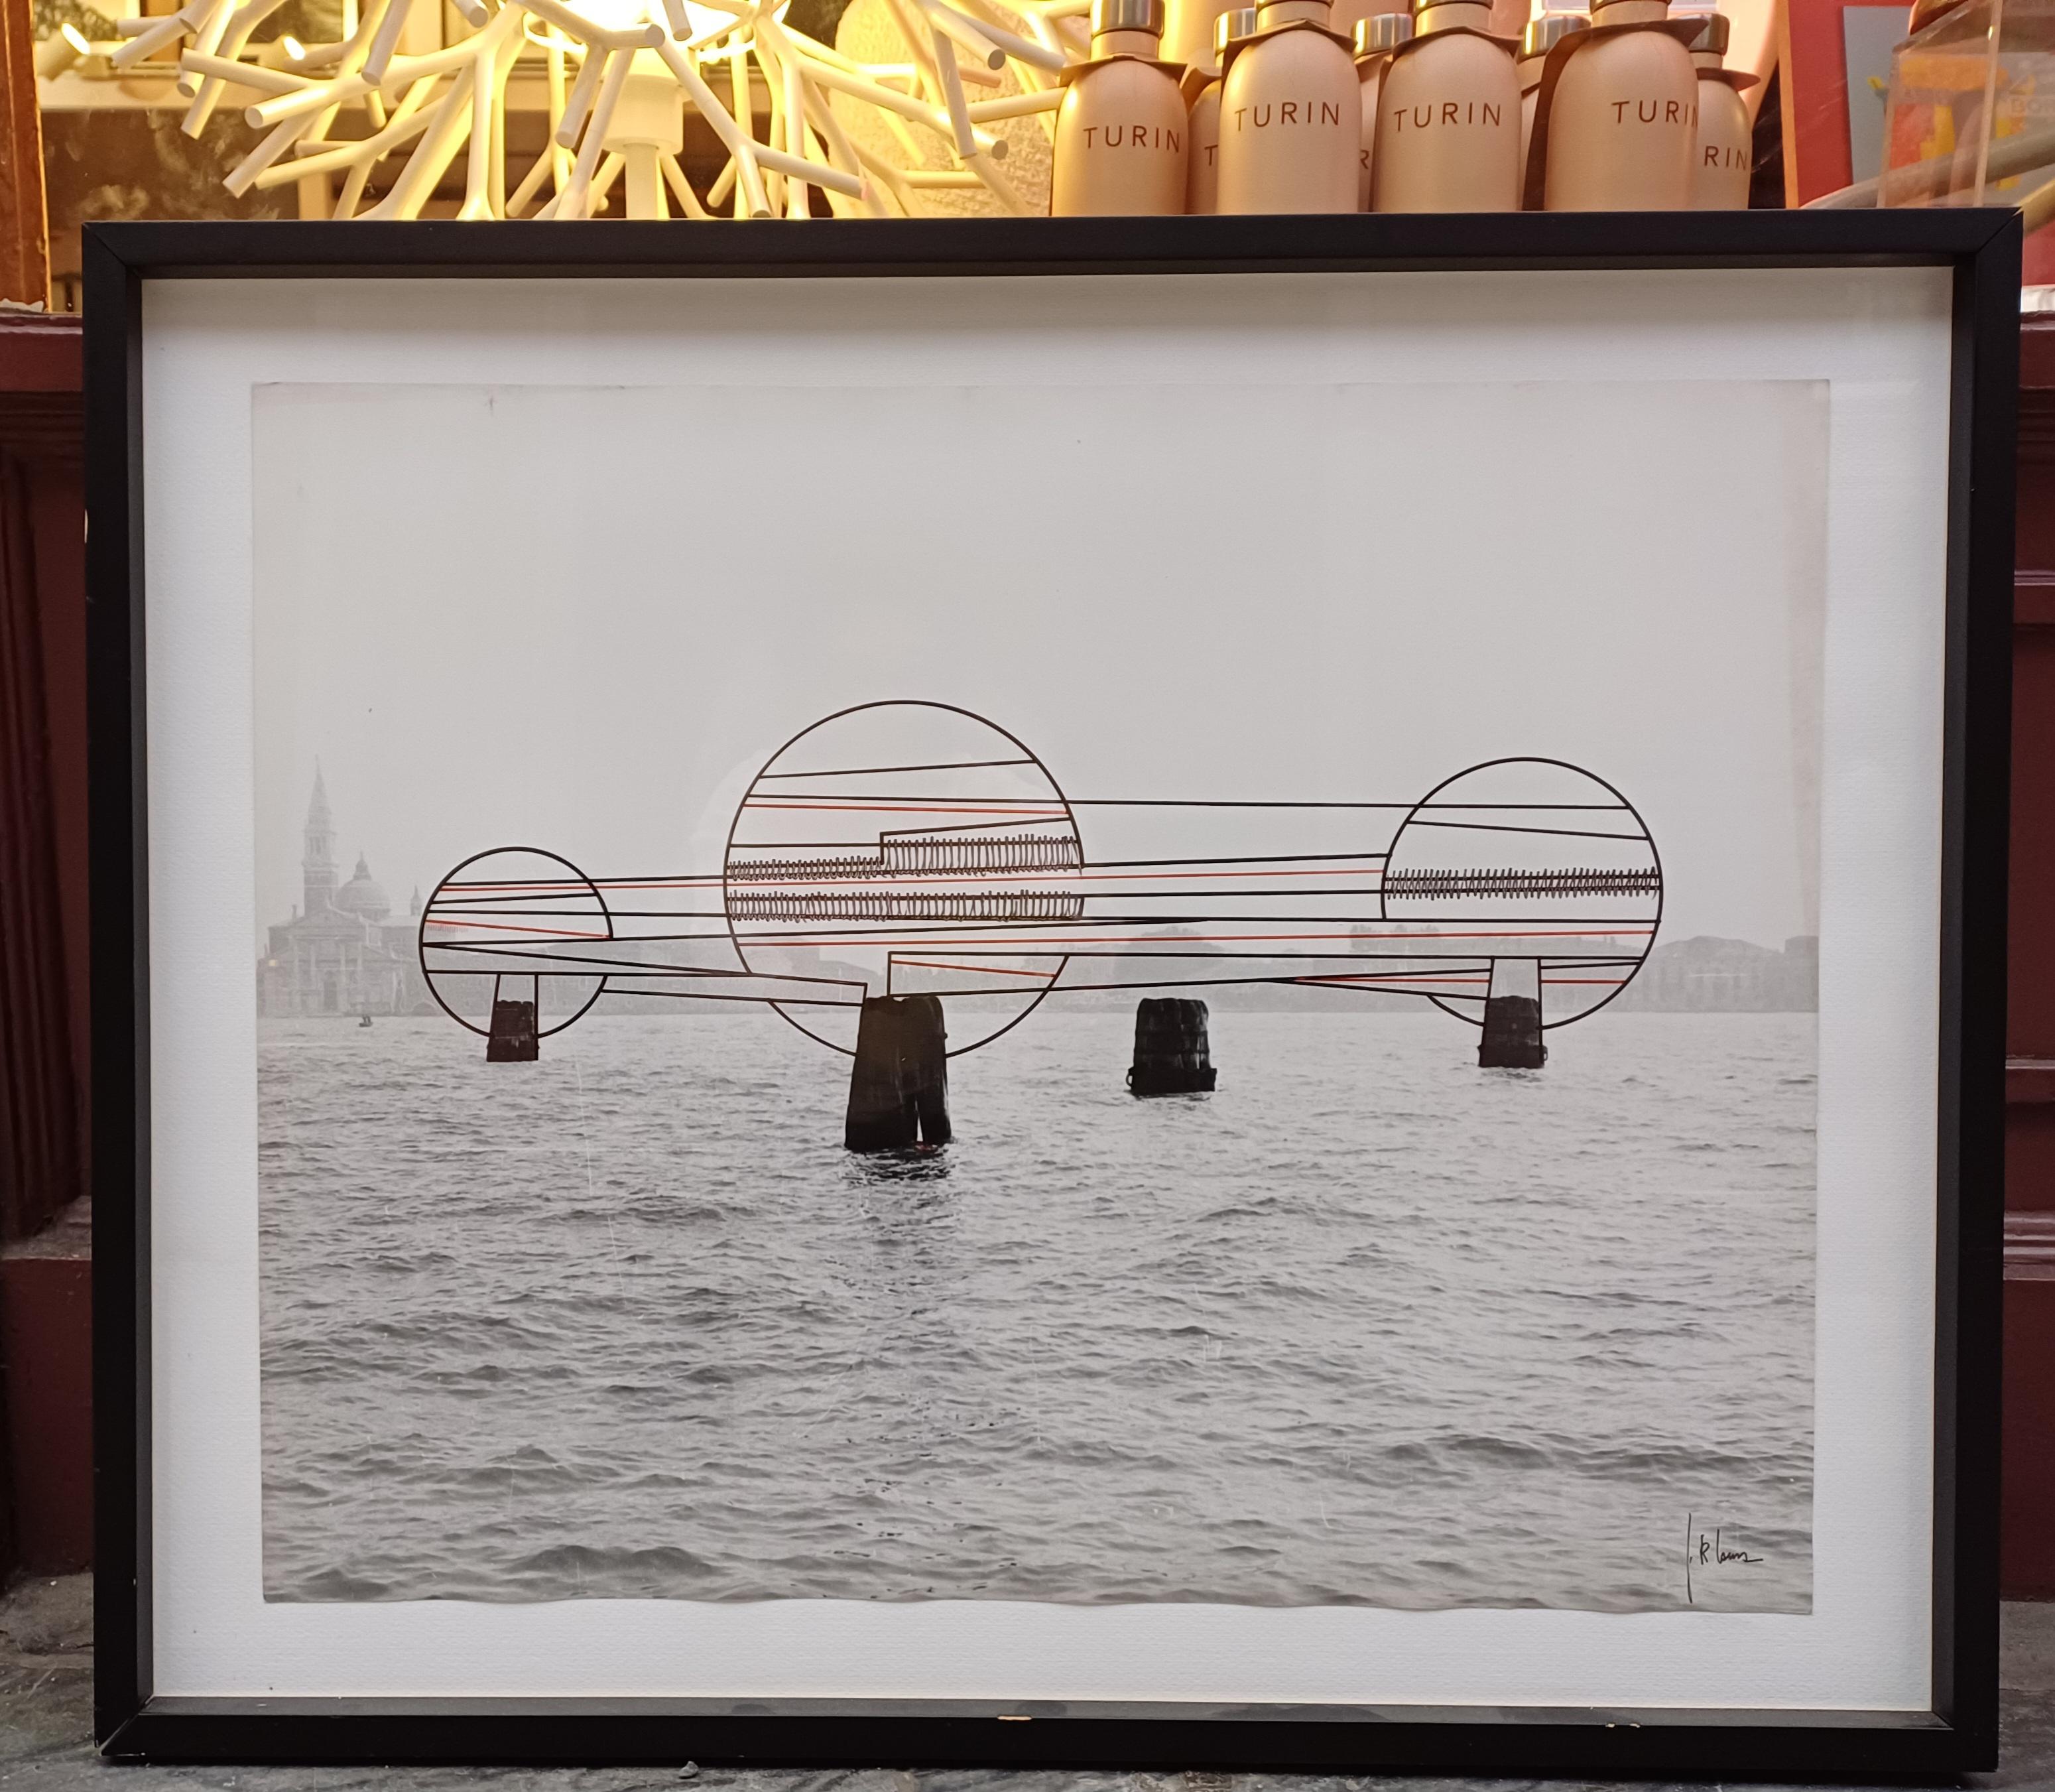 Fotografie Giuseppe Riccardo Lanza aus Venedig 1975
Giuseppe Riccardo Lanza war ein Künstler aus Turin, Italien.
Silberner Salzgelatineabzug, Jahrgang 1975 mit manuellen Eingriffen. Innenmaße des Fotorahmens: 65 cm x 50 cm
Das Foto hat einen